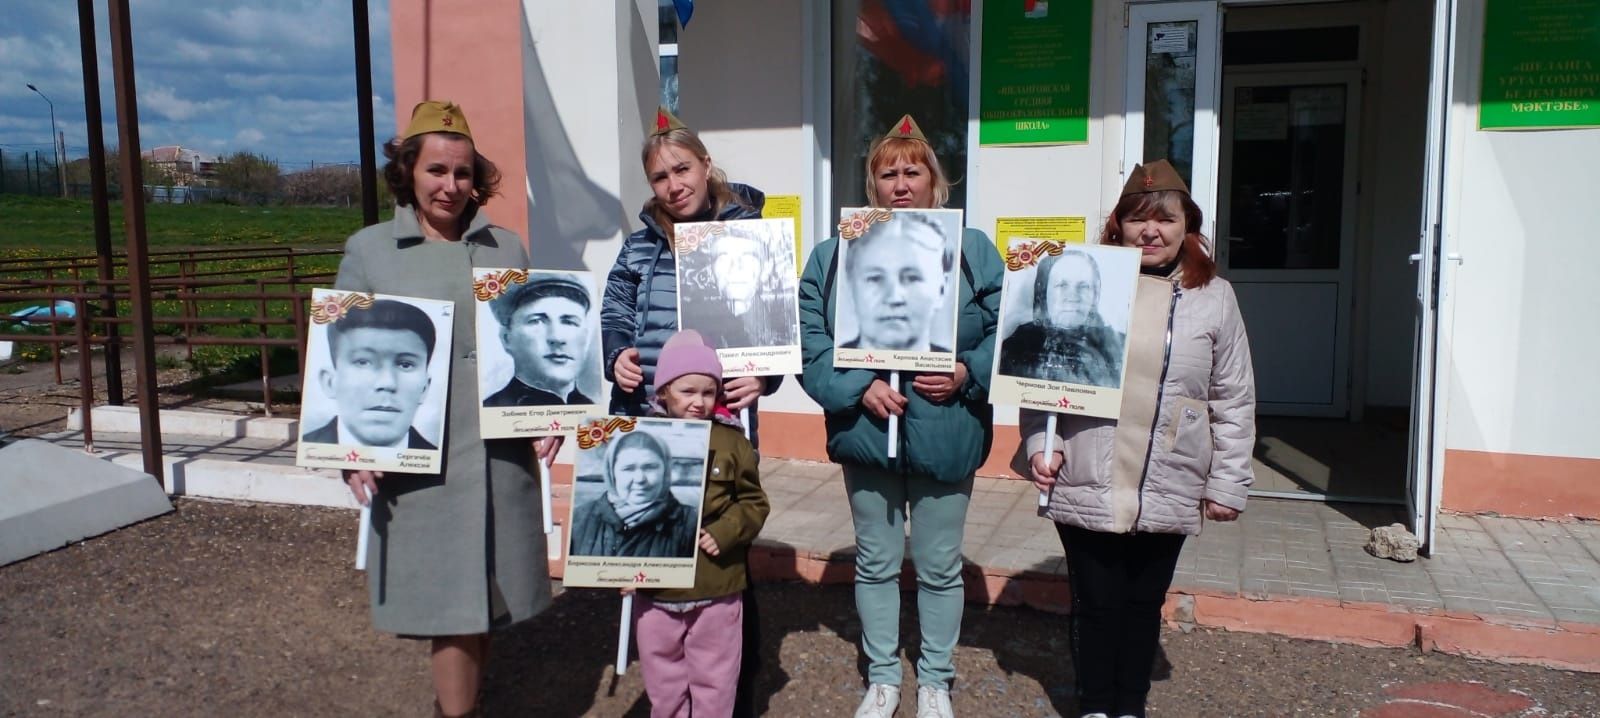 Ученицы Шеланговской школы собрали информацию по 25 землякам-участникам Великой Отечественной войны